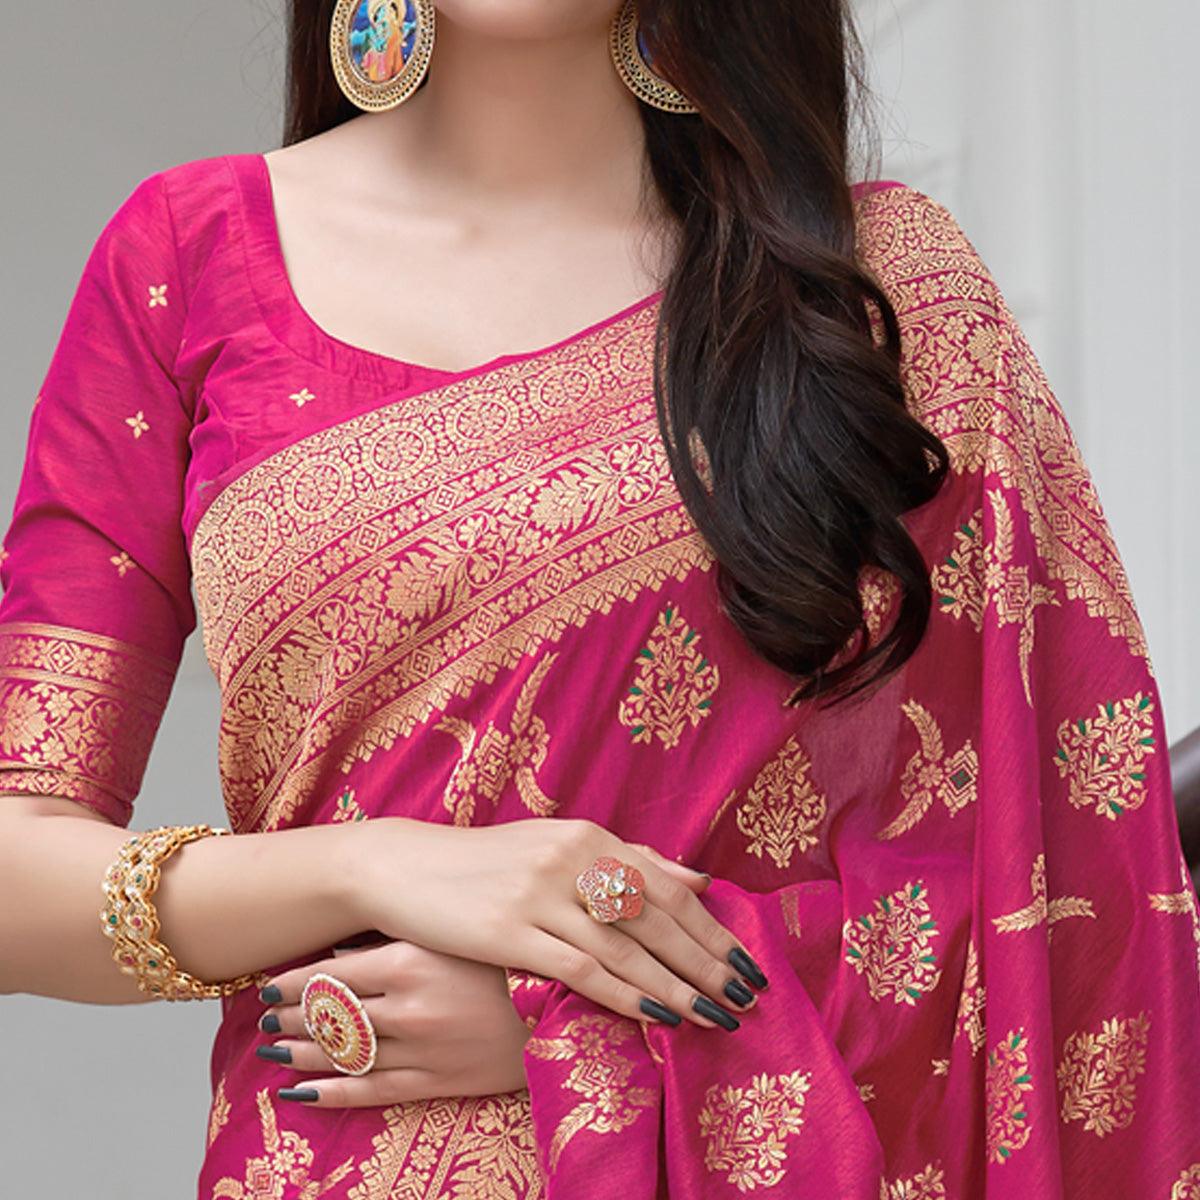 Pink Festive Wear Woven Banarasi Art Silk Saree - Peachmode